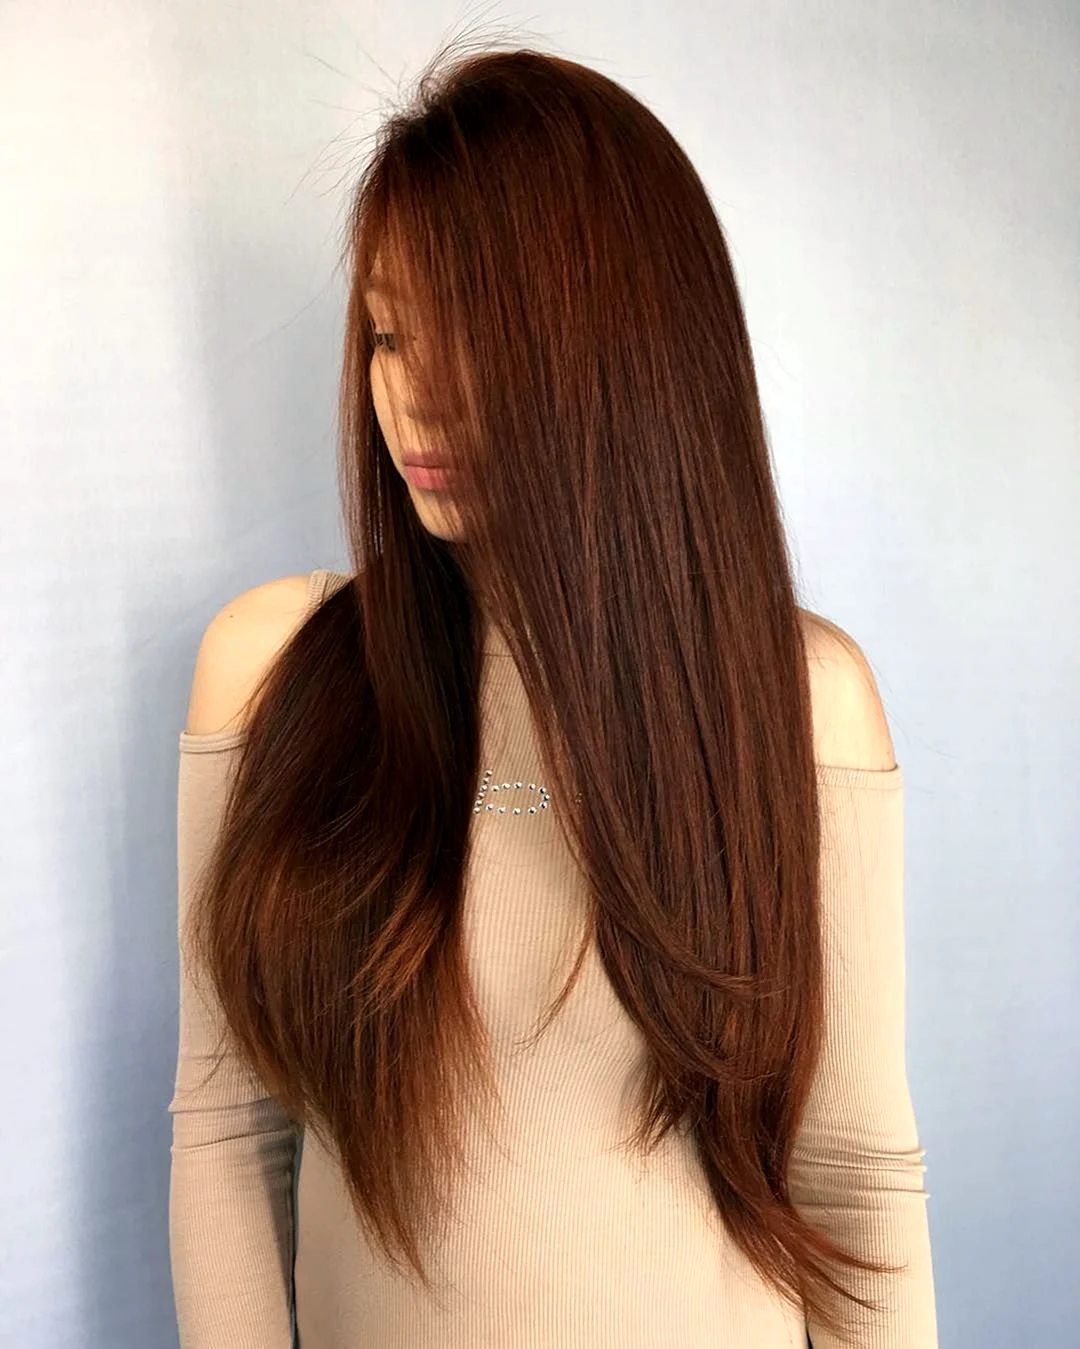 Длинные волосы шоколадного цвета